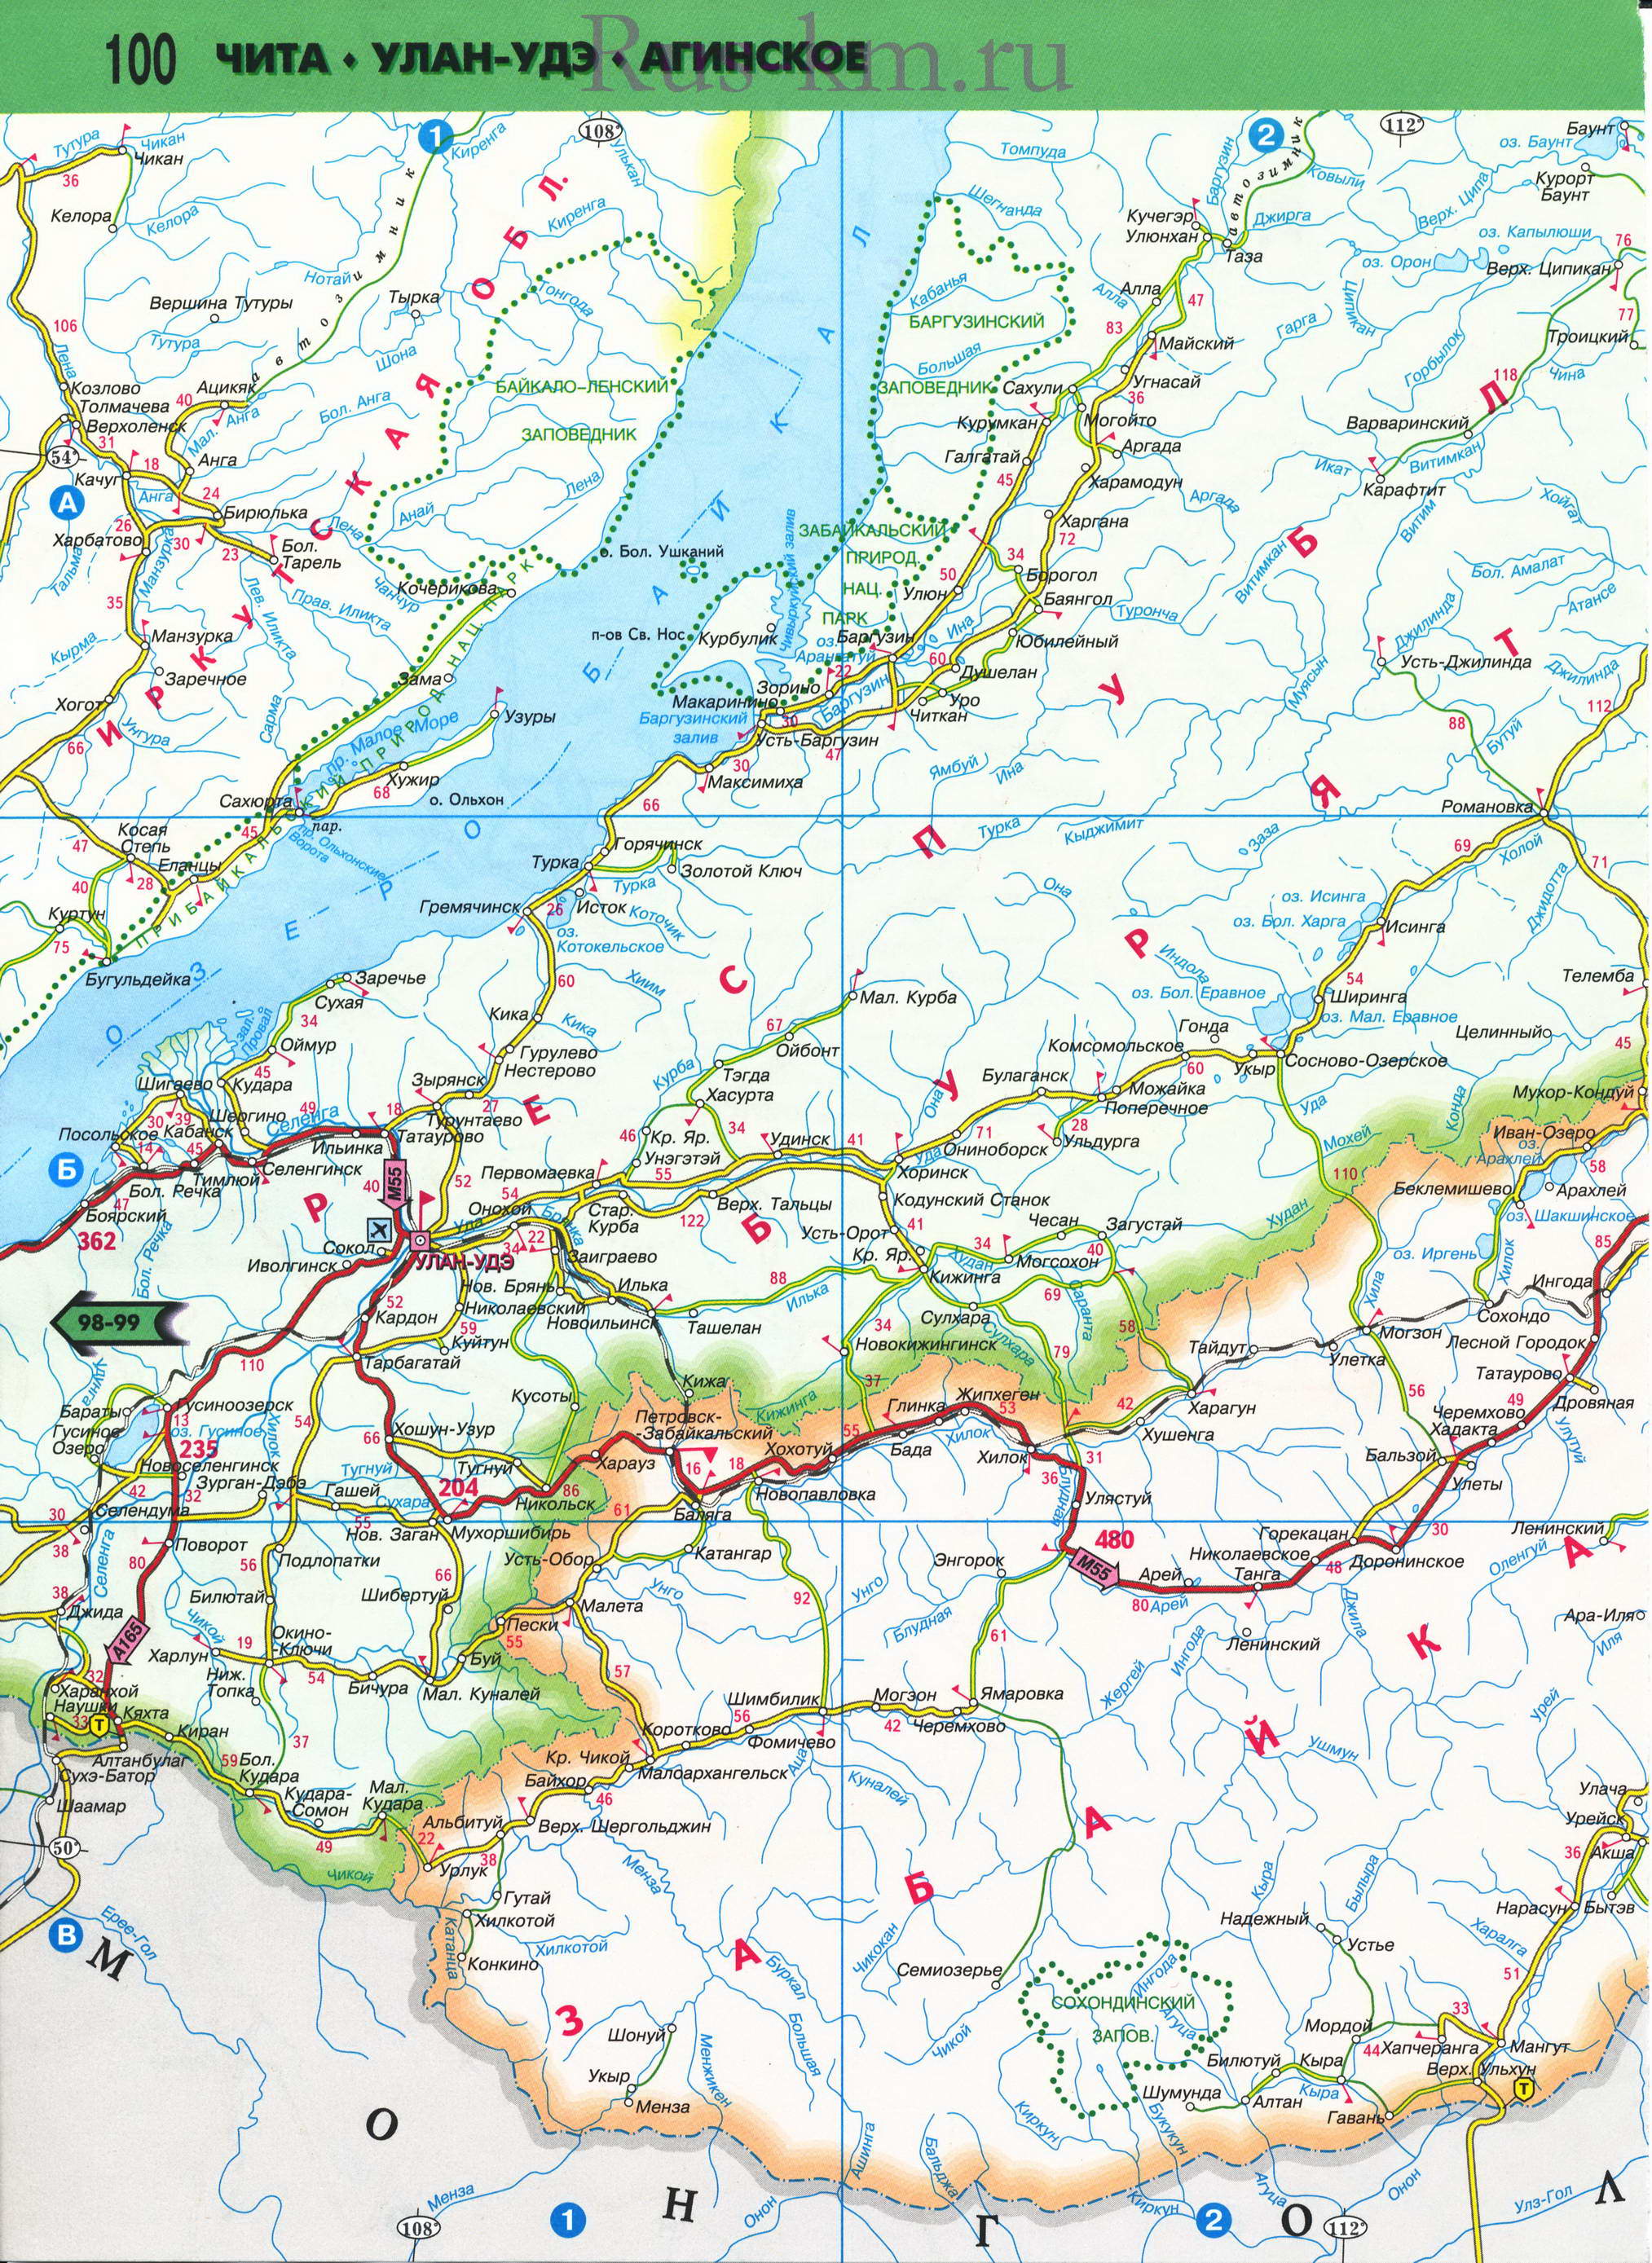 Карта Восточной Сибири автомобильная. Подробная карта автомобильных дорог Восточной Сибири из атласа России 2011 года, A2 - 